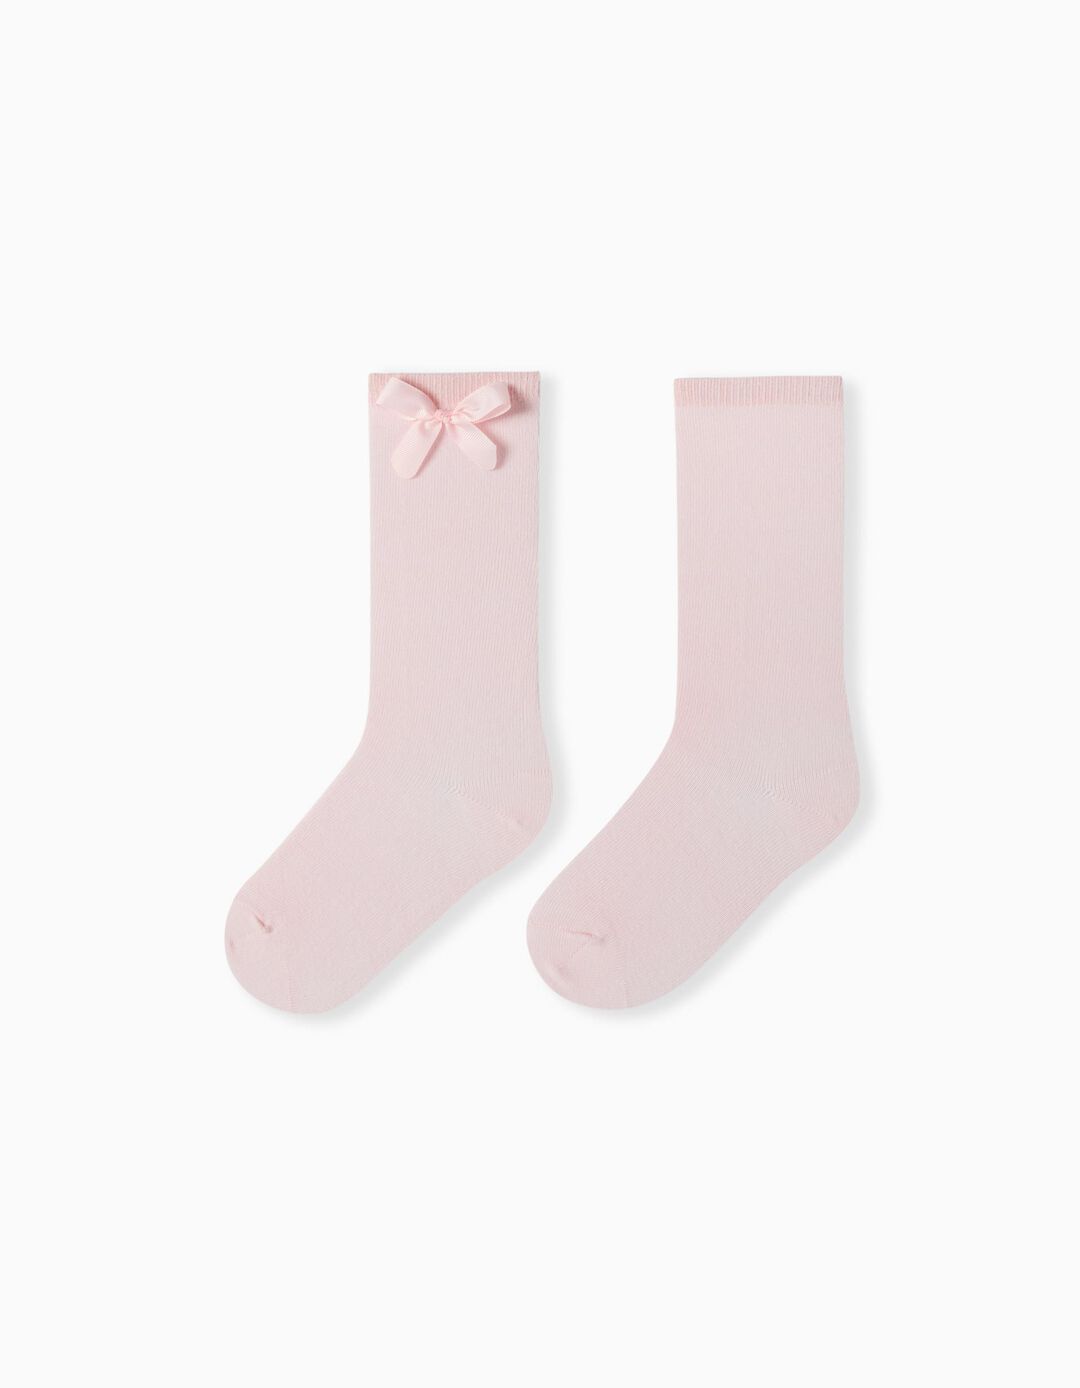 Bow Plain Knee-high Socks, Girls, Light Pink